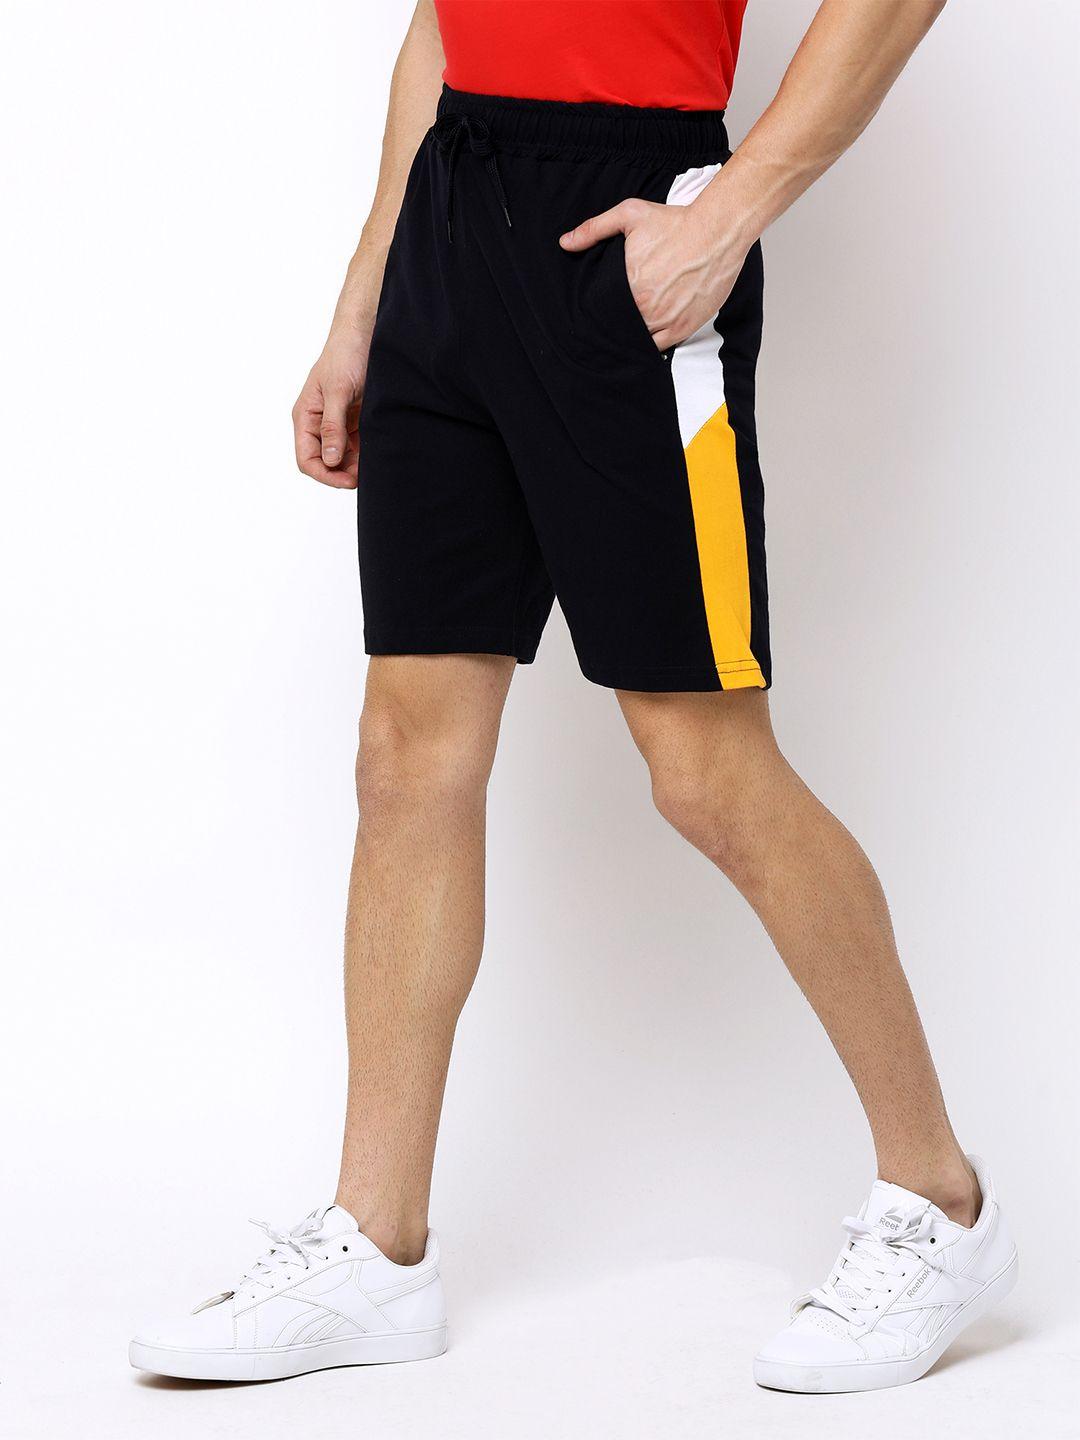 maniac men black colourblocked slim fit regular shorts